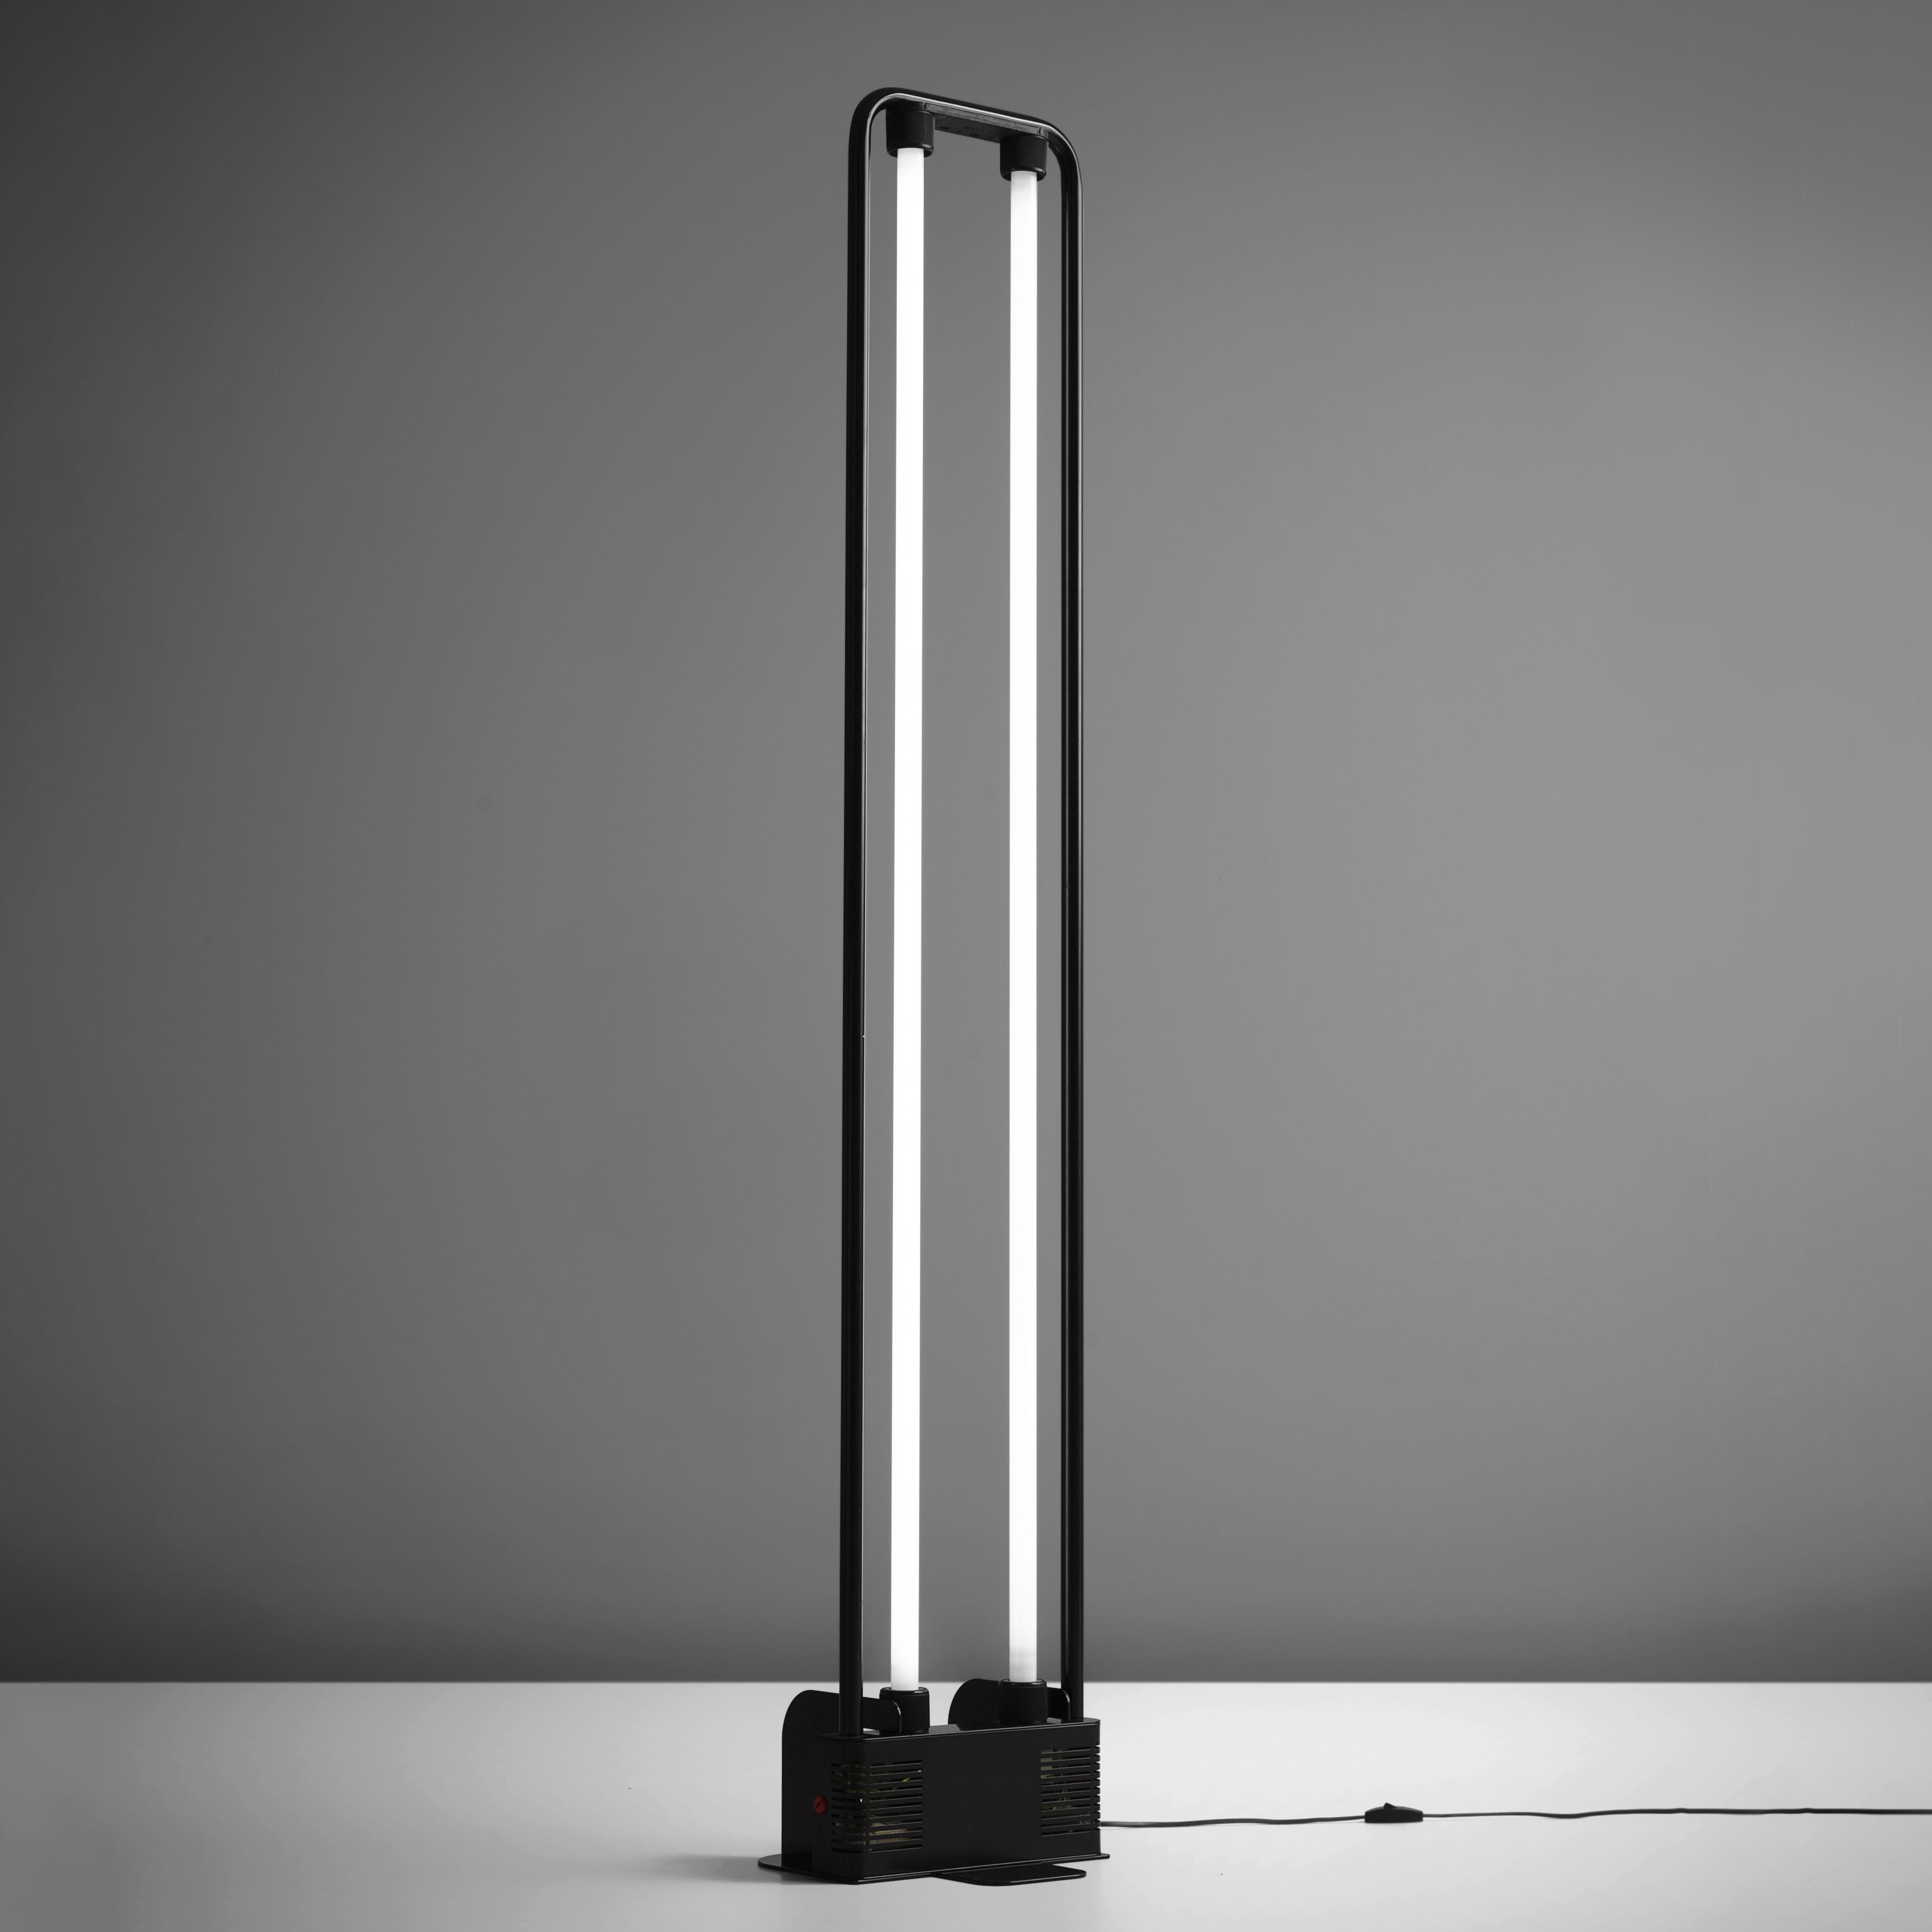 Gian Nicola Gigante pour Zerbetto, lampadaire, métal recouvert de noir, verre, Italie, années 1980. 

Ce lampadaire postmoderne a été conçu par le designer italien Gian Nicola Gigante. Gigante est connu pour ses lampadaires fluorescents. Ce